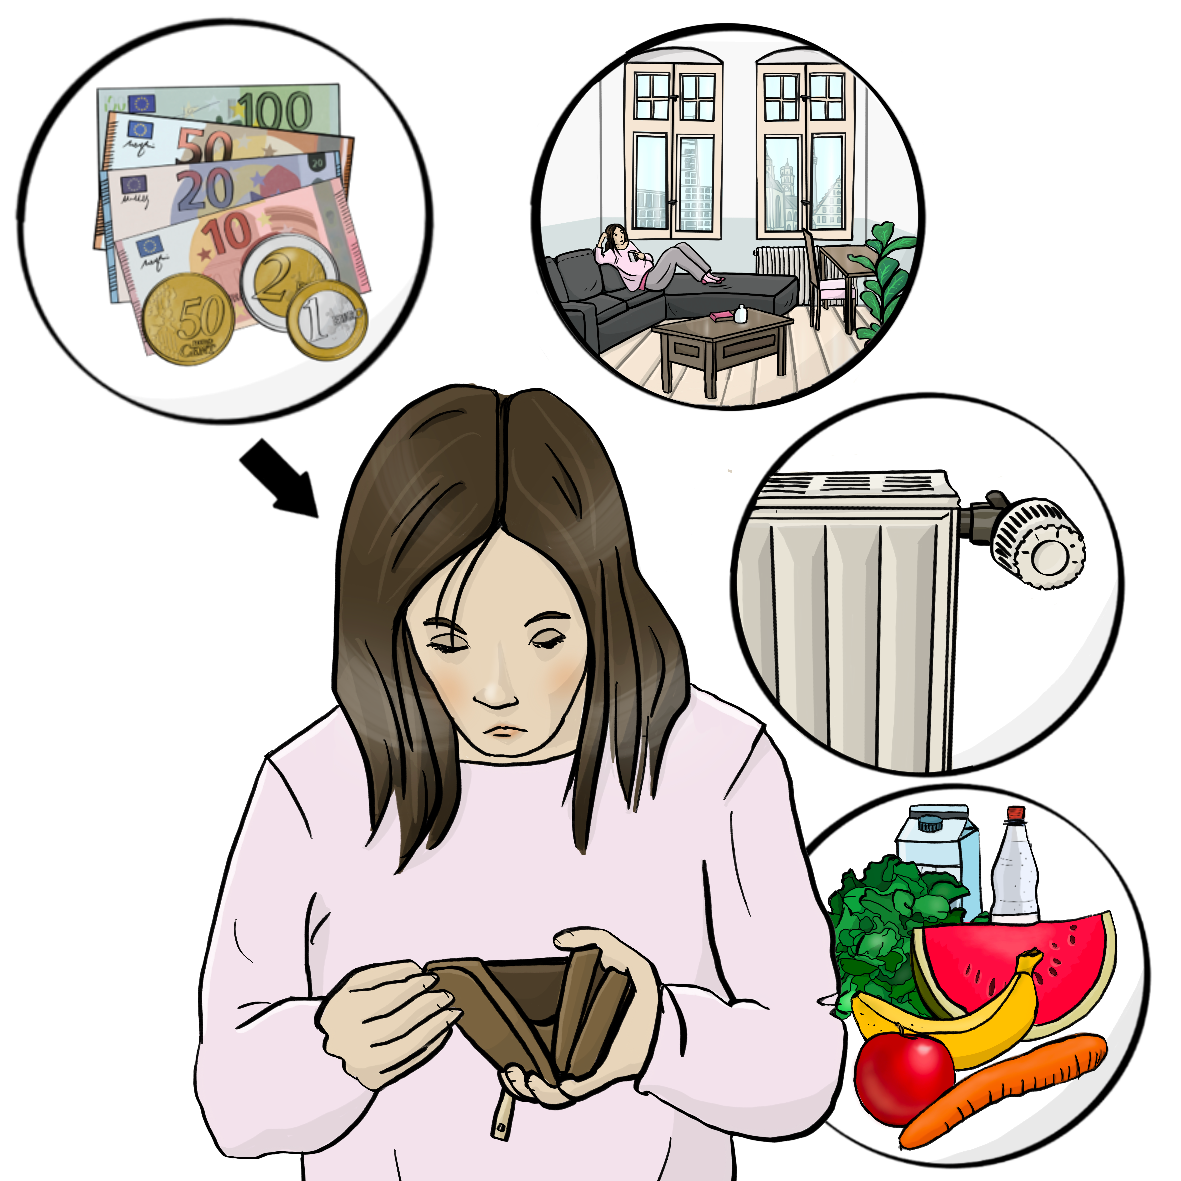 Eine Frau schaut in ihr Portemonnaie. Um sie herum sind vier Kreise mit Bildern: Geld, eine Wohnung, eine Heizung und Lebensmittel. Von dem Geld zeigt ein Pfeil auf die Frau. 